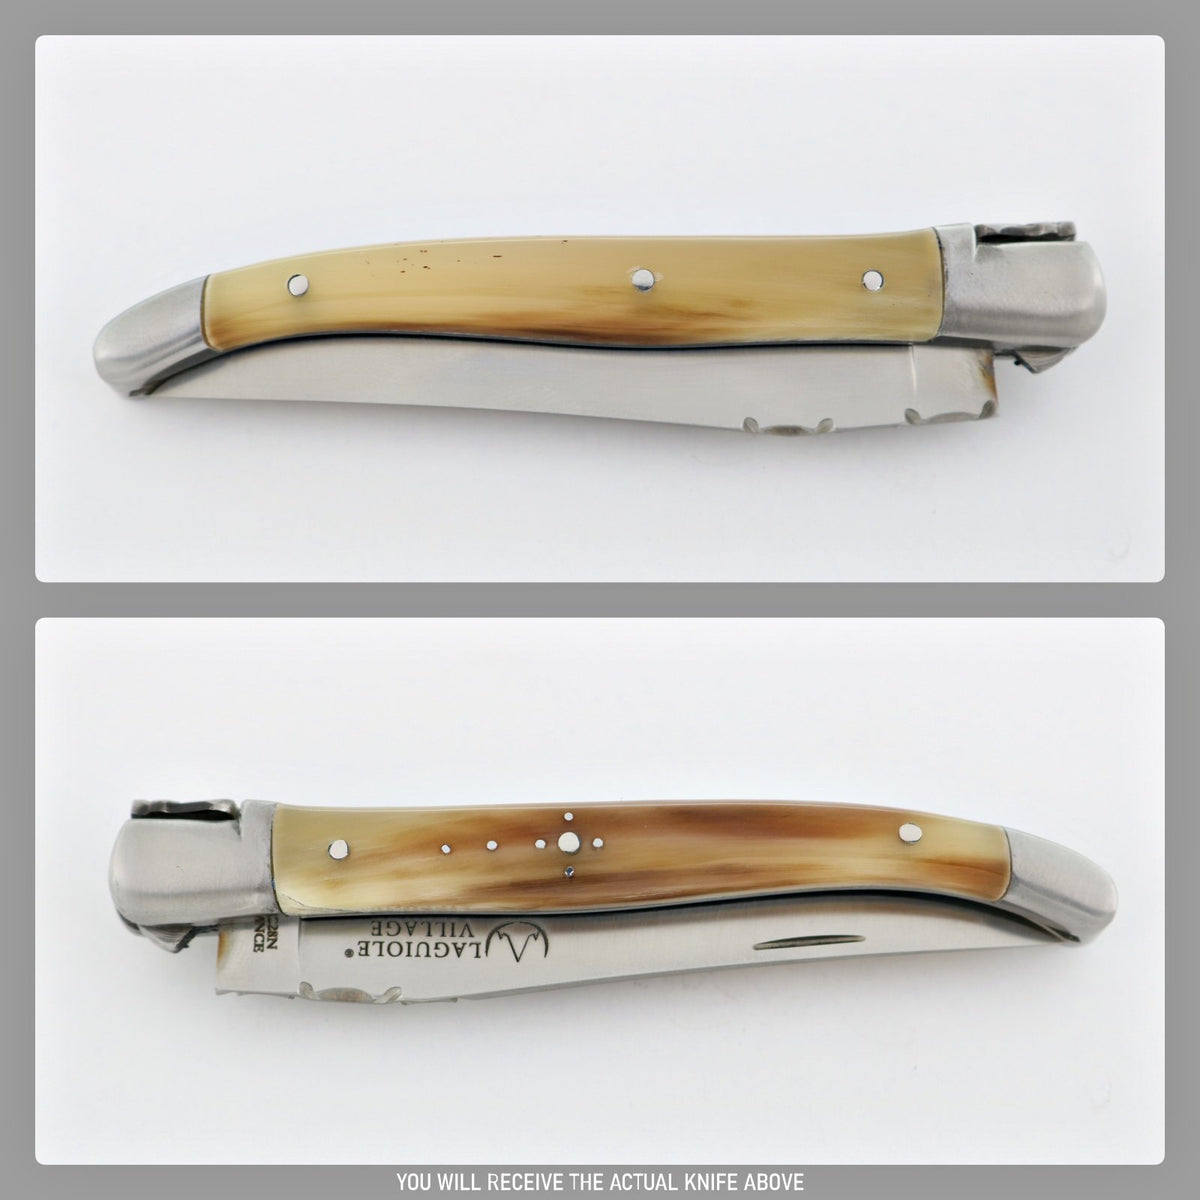 Laguiole Village 10 cm Pocket Knife Flamed Horn Tip #16-POCKET KNIFE